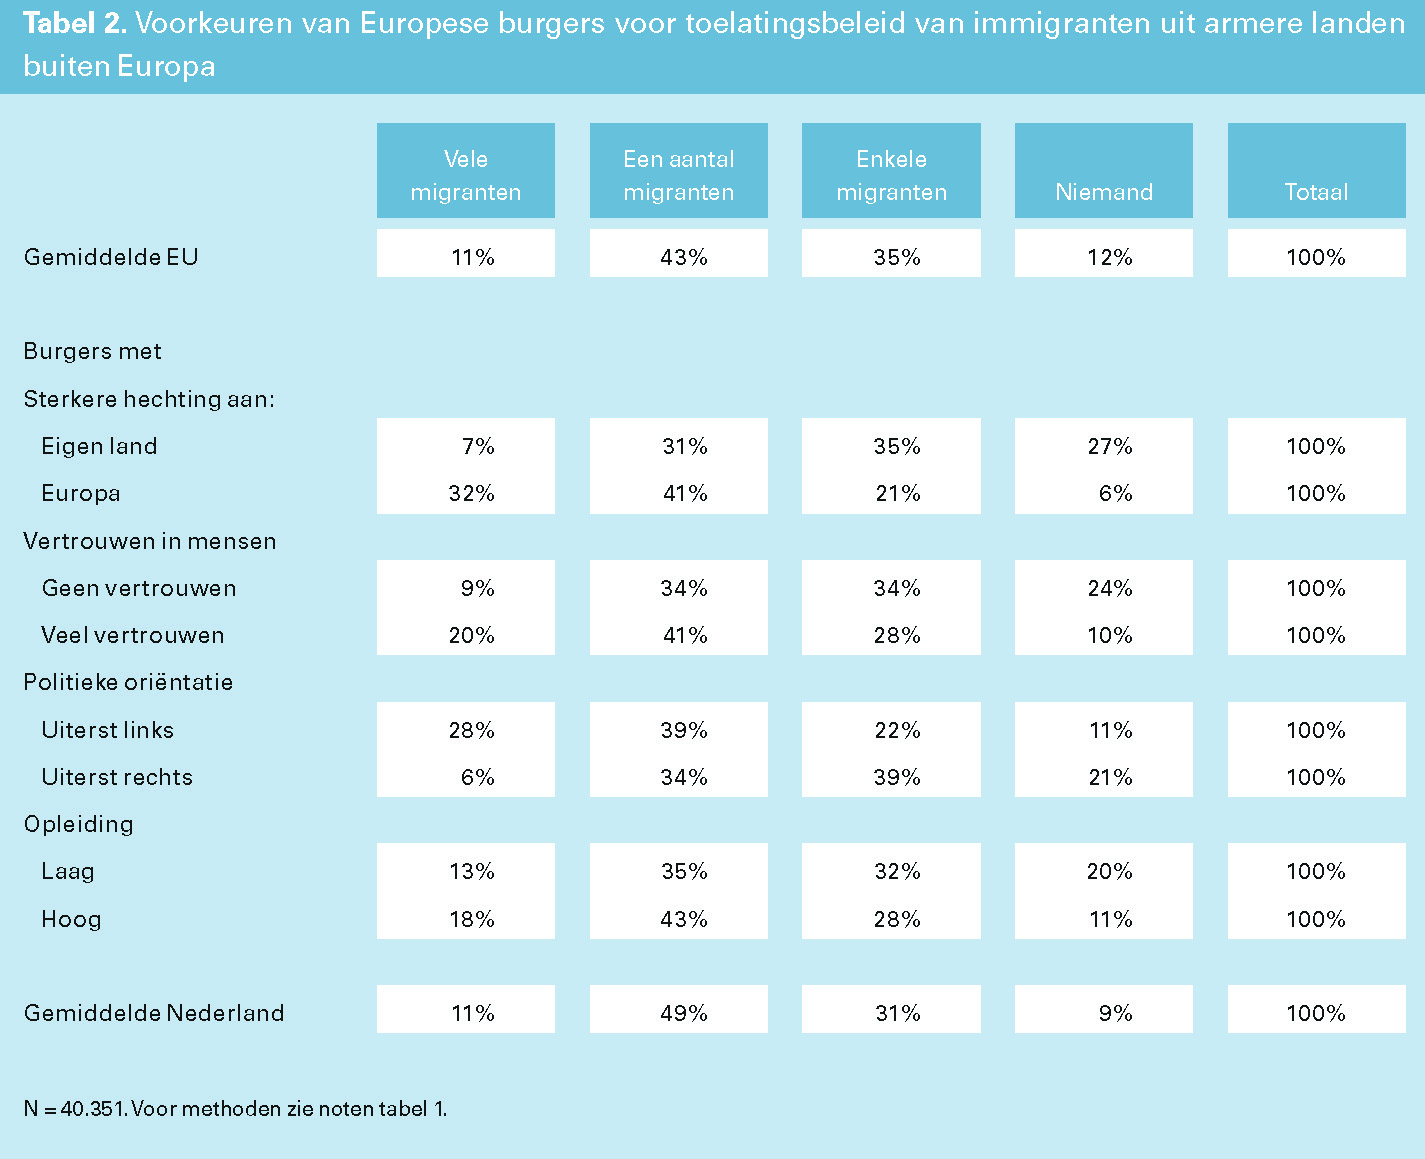 Tabel 2. Voorkeuren van Europese burgers voor toelatingsbeleid van immigranten uit armere landen buiten Europa